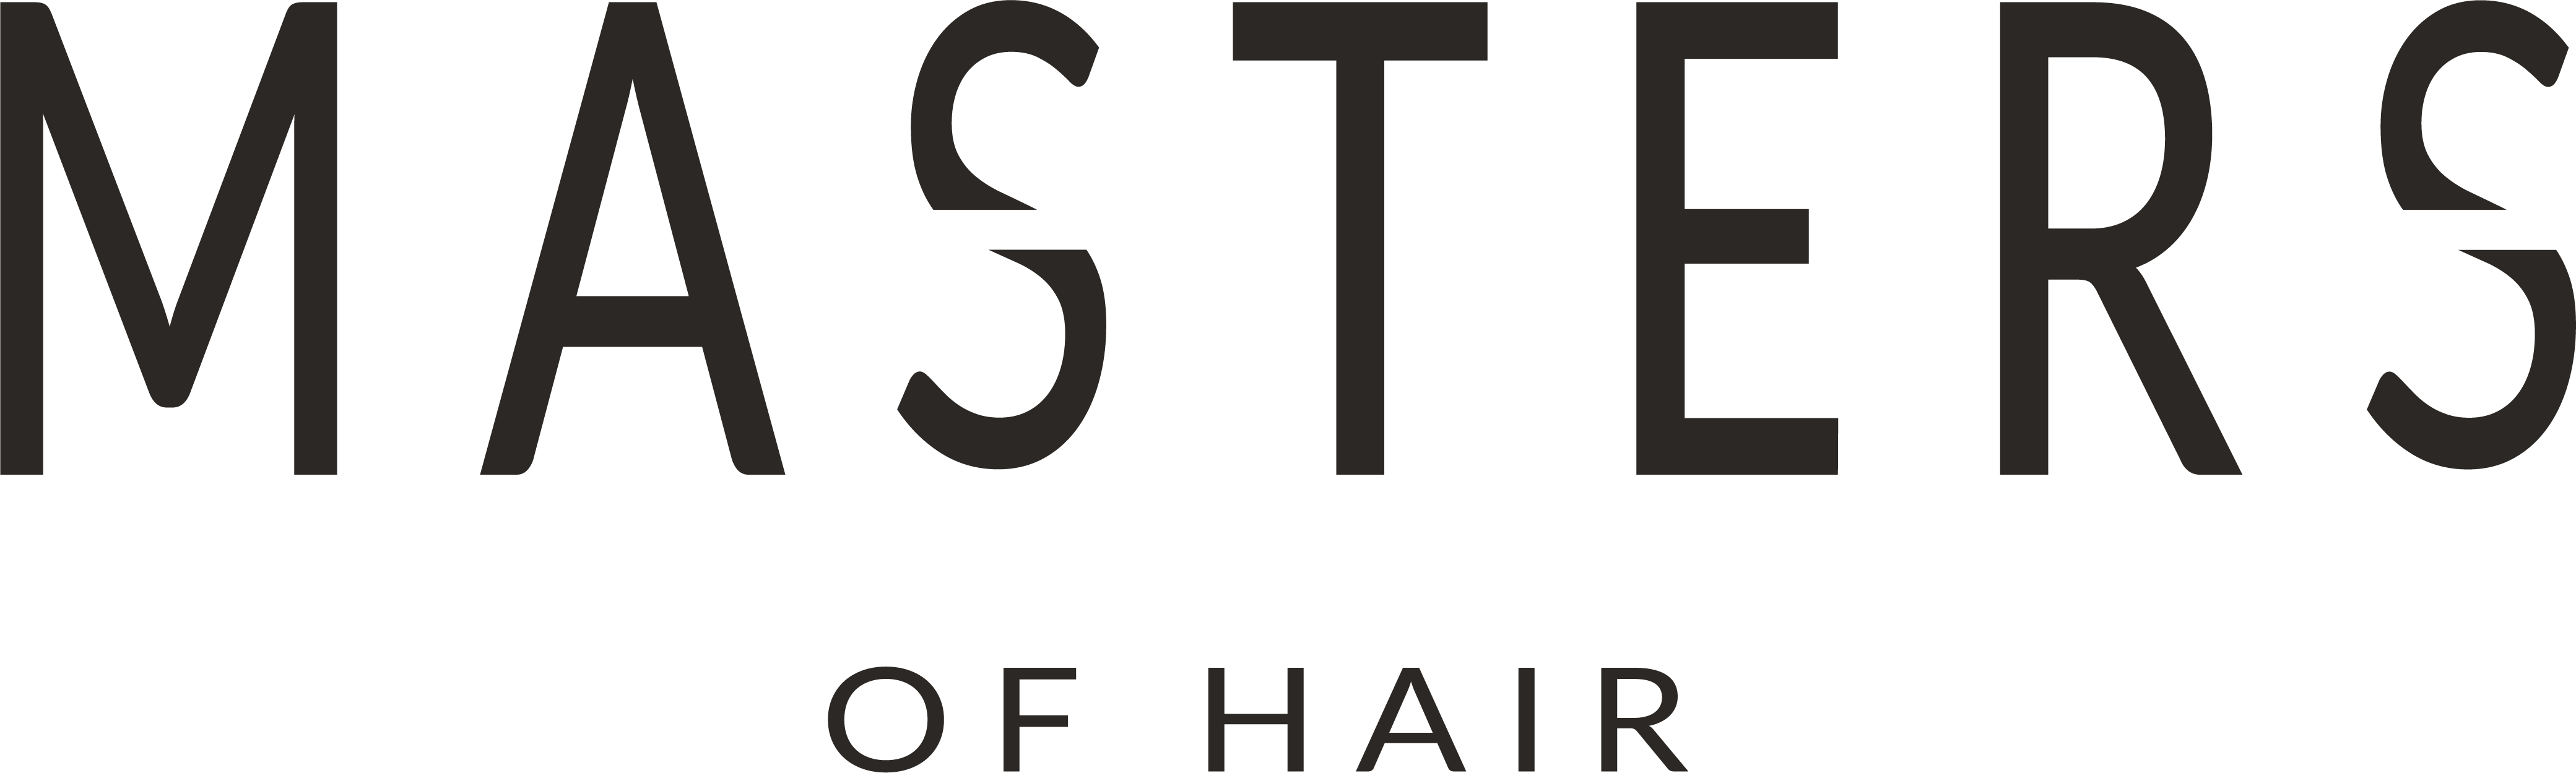 Masters of Hair | Hairstyling Amsterdam & Amstelveen